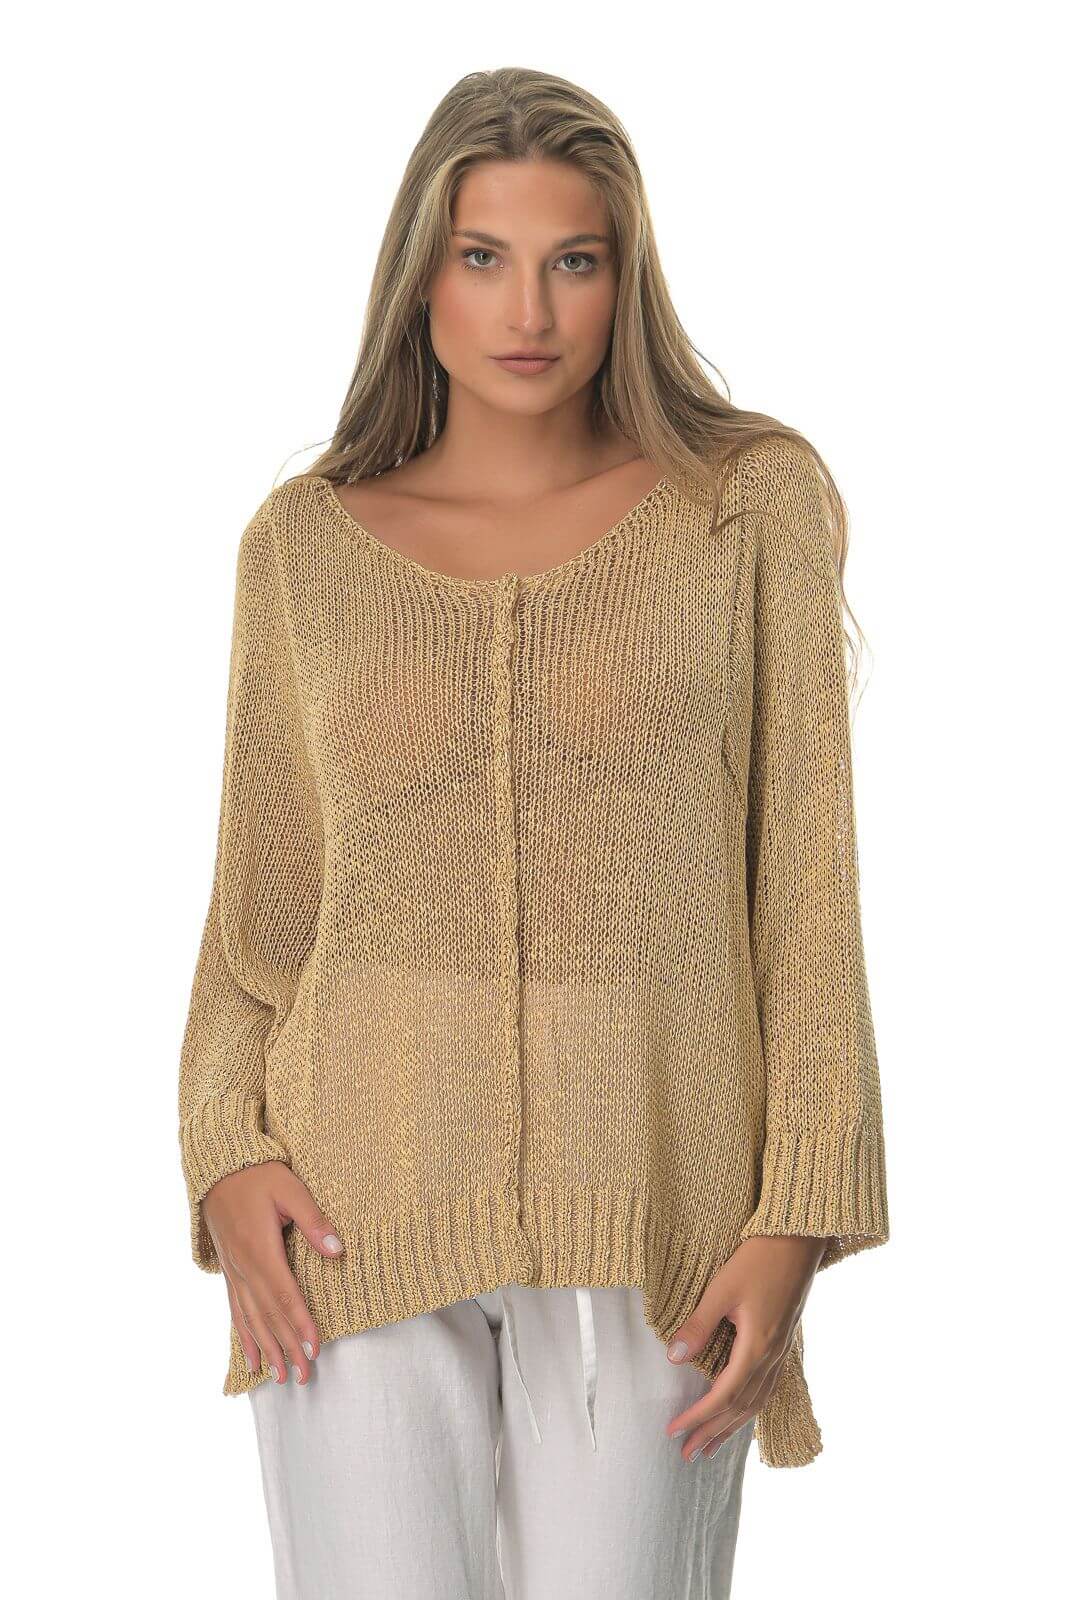 Μπλούζα Γυναικεία Sweater Χρυσή-My Boutique